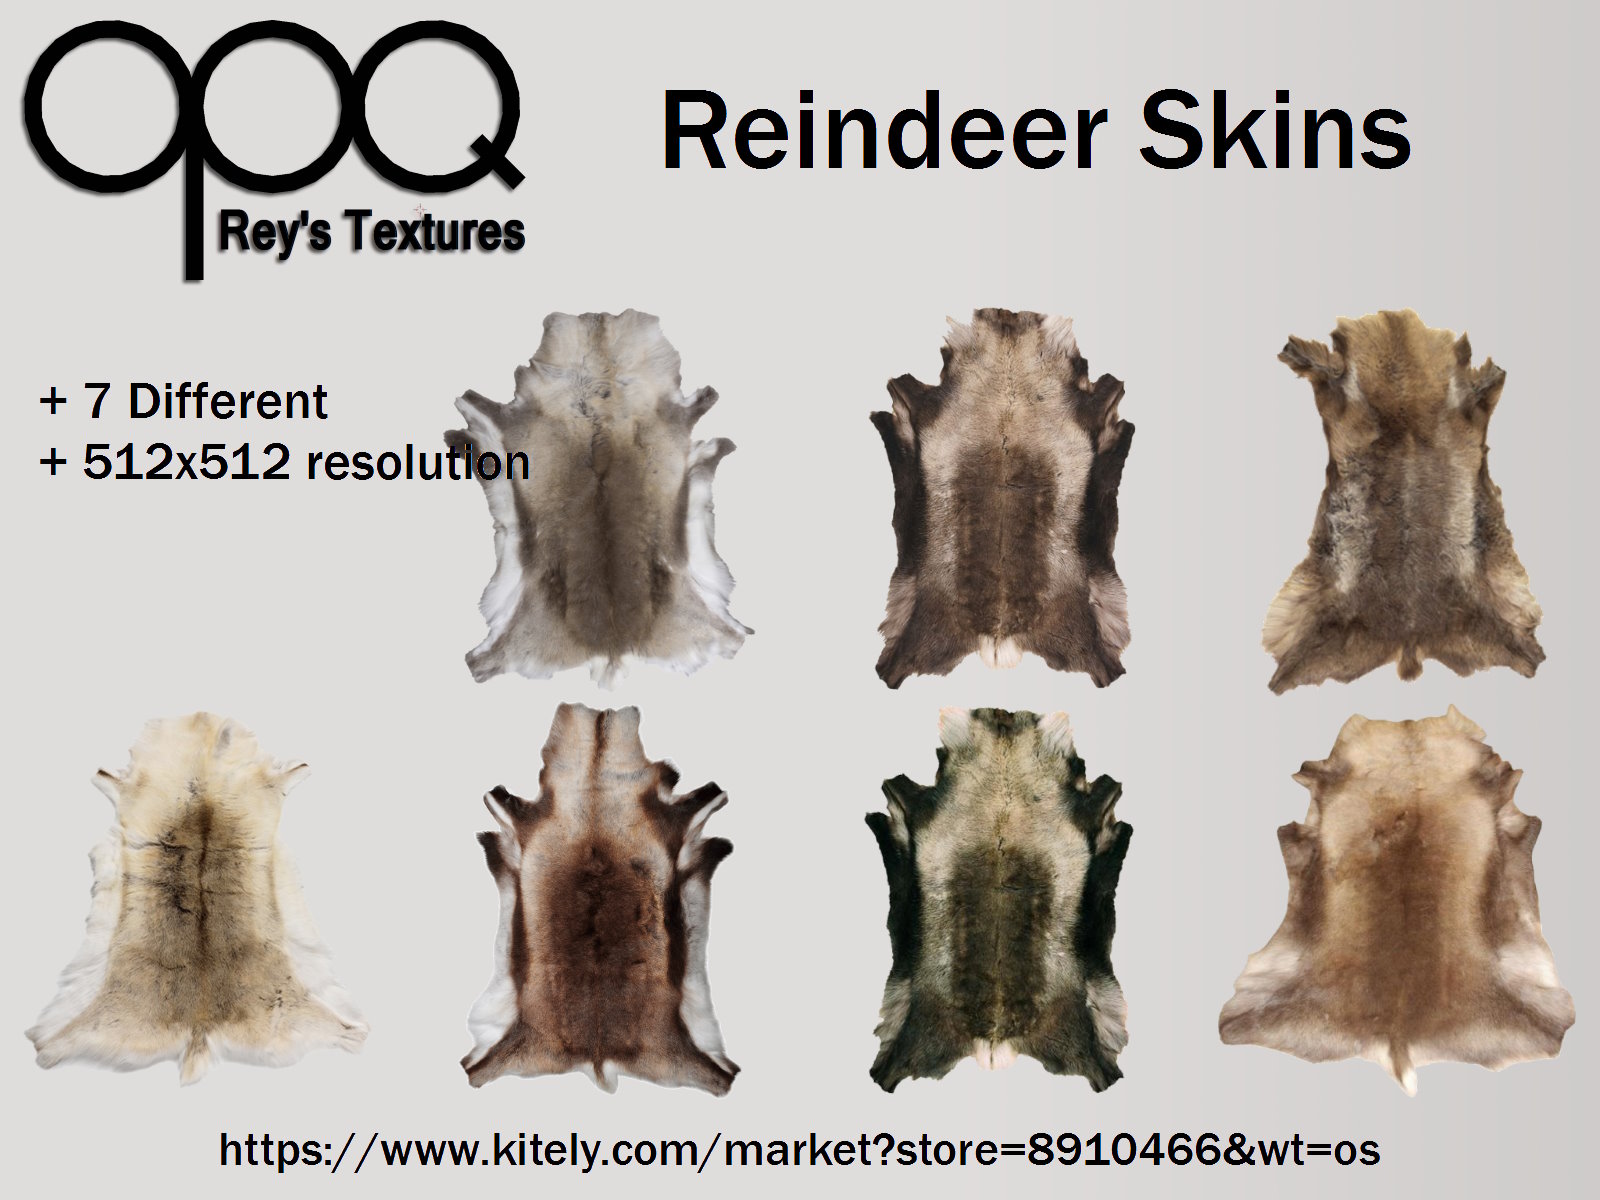 Rey's Reindeer Skins Poster Kitely.jpg